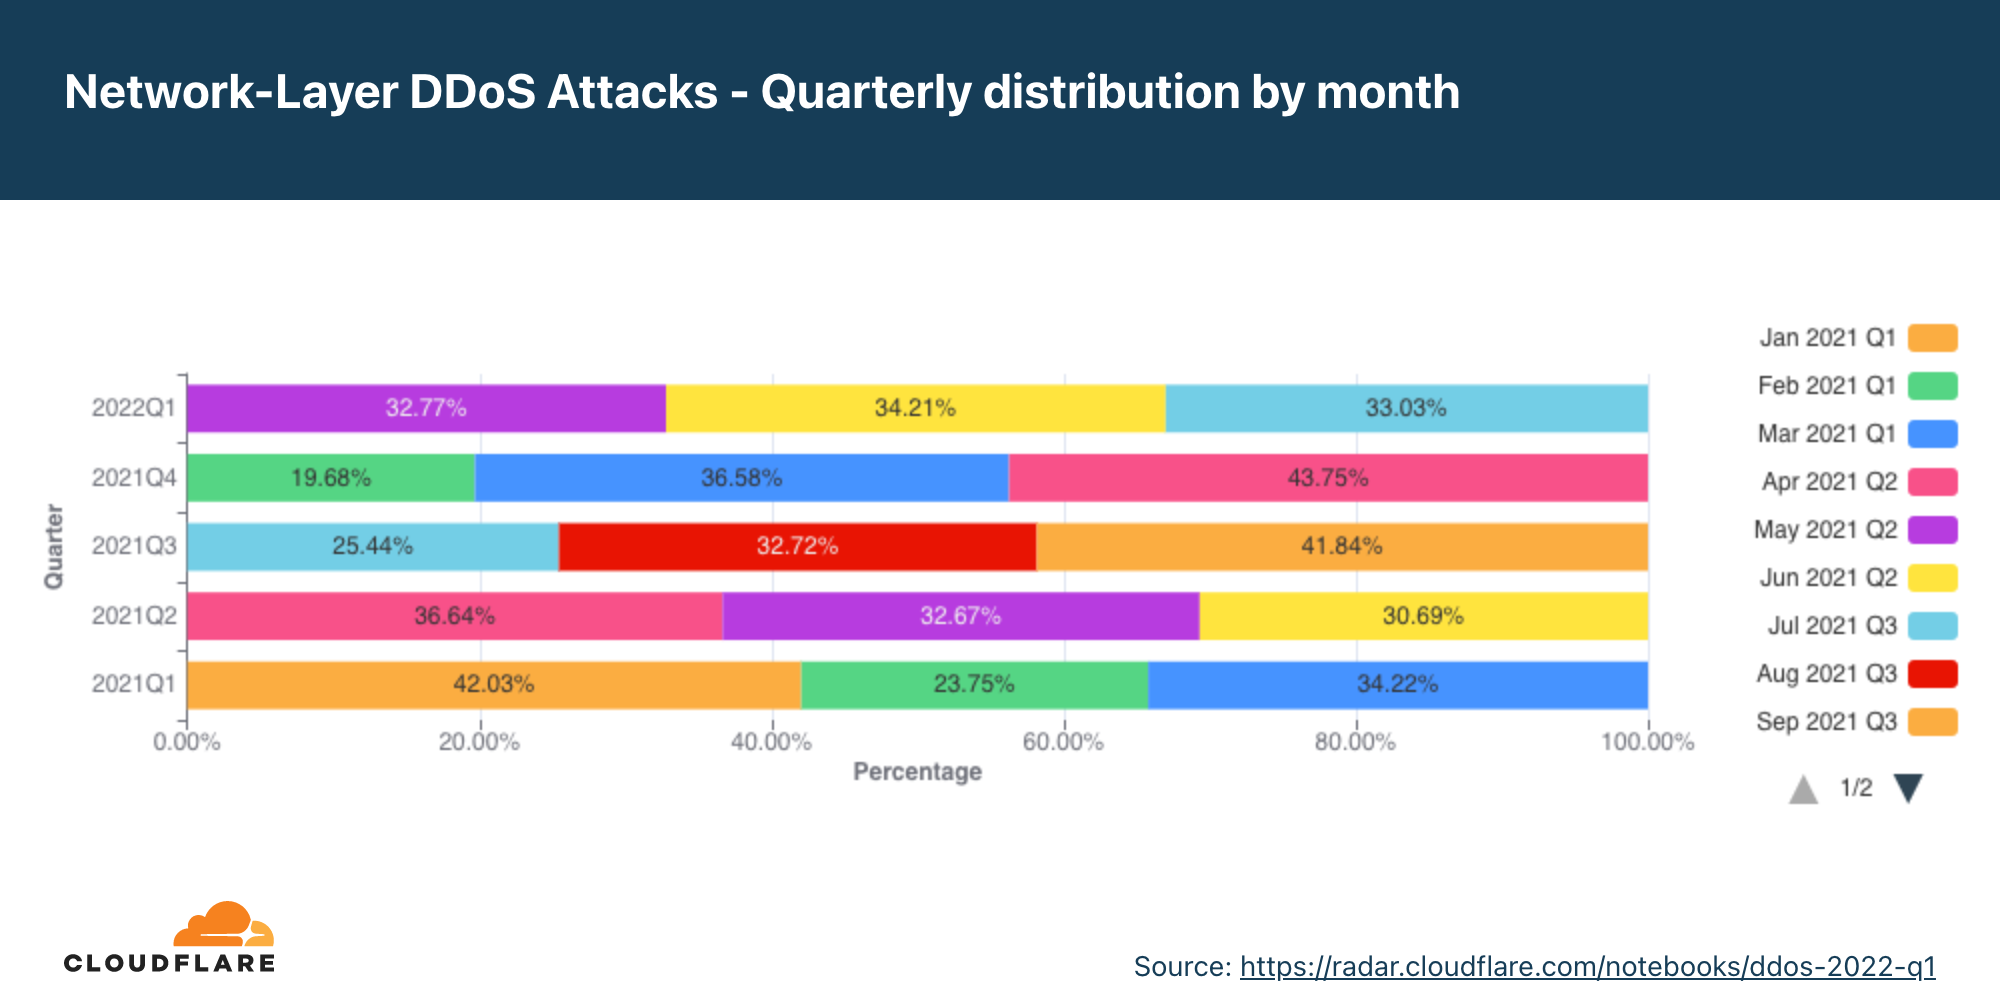 過去12ヶ月のアプリケーション層DDoS攻撃の月別四半期分布のグラフ